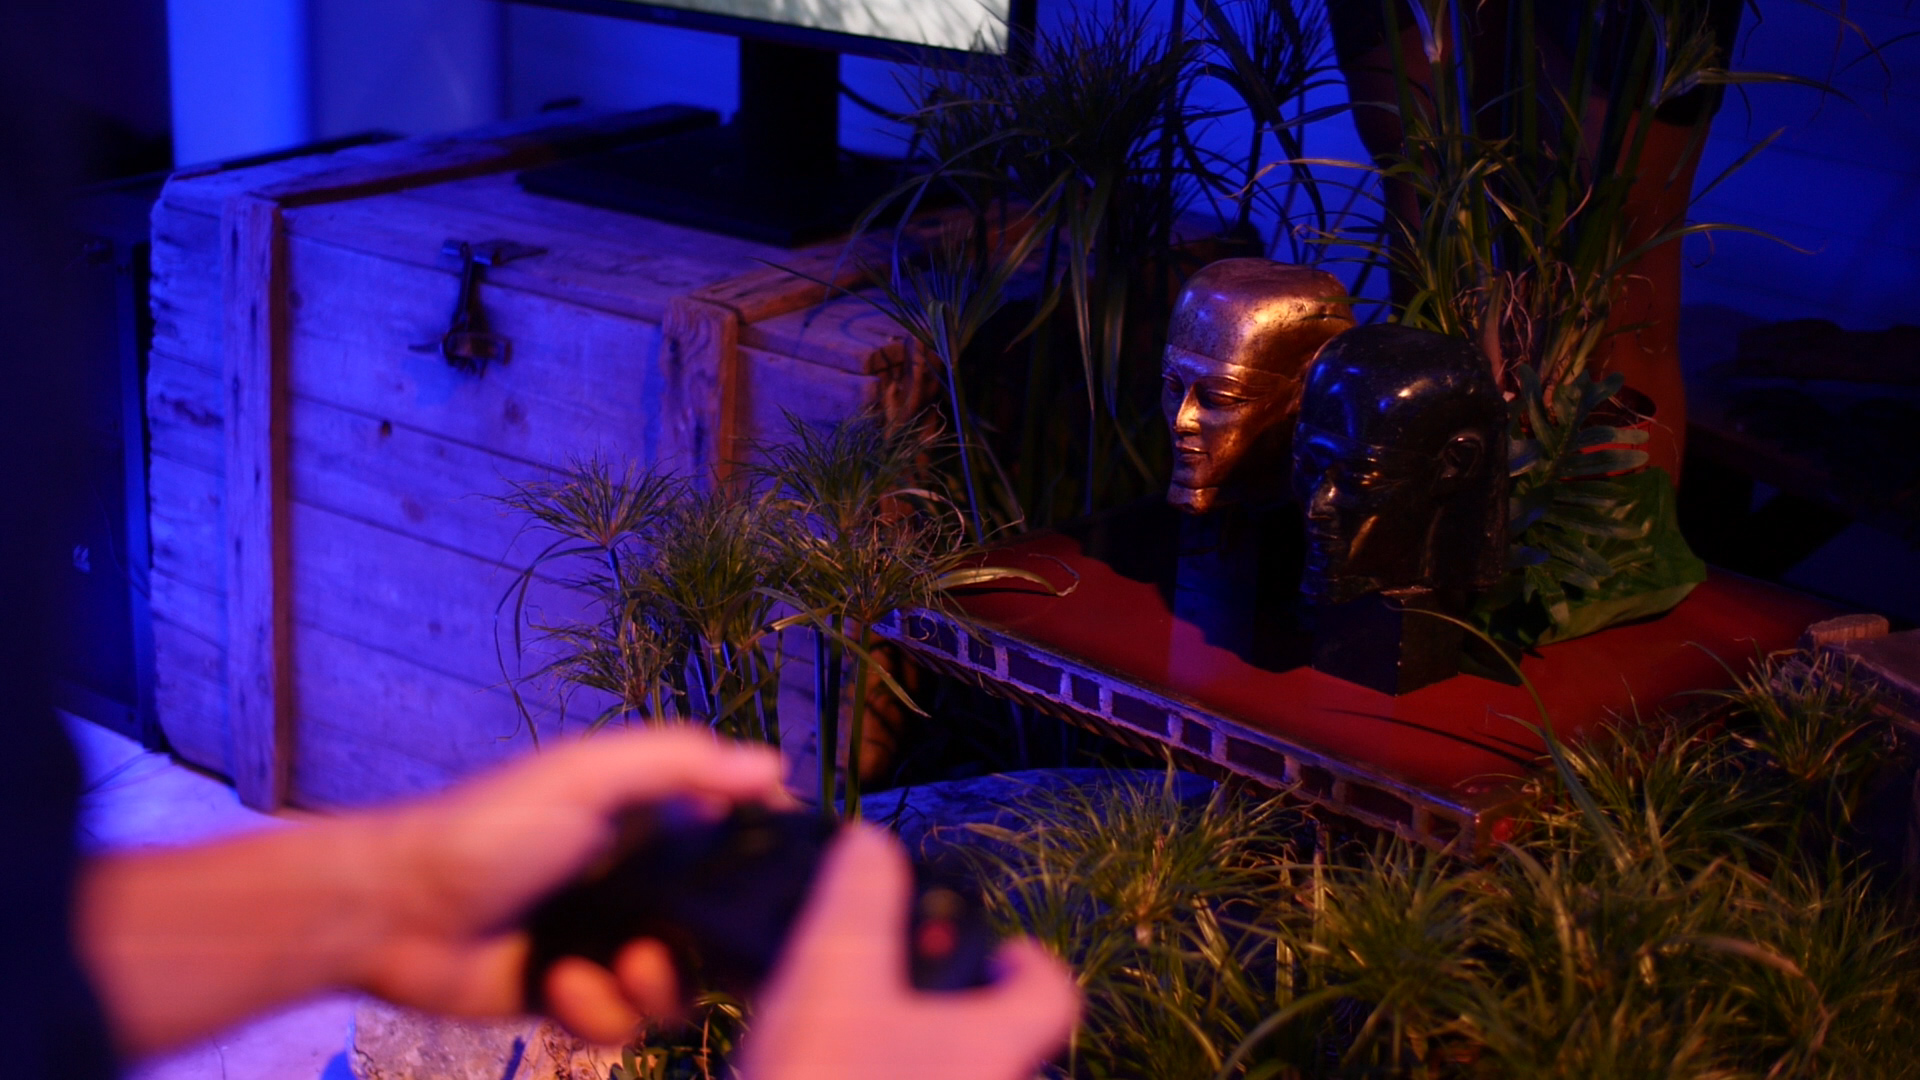 Im Vordergrund wird ein Controller von zwei Haenden gehalten und zwei Buesten und Pflanzen stehen auf einem antiken Hocker neben einem Bildschirm